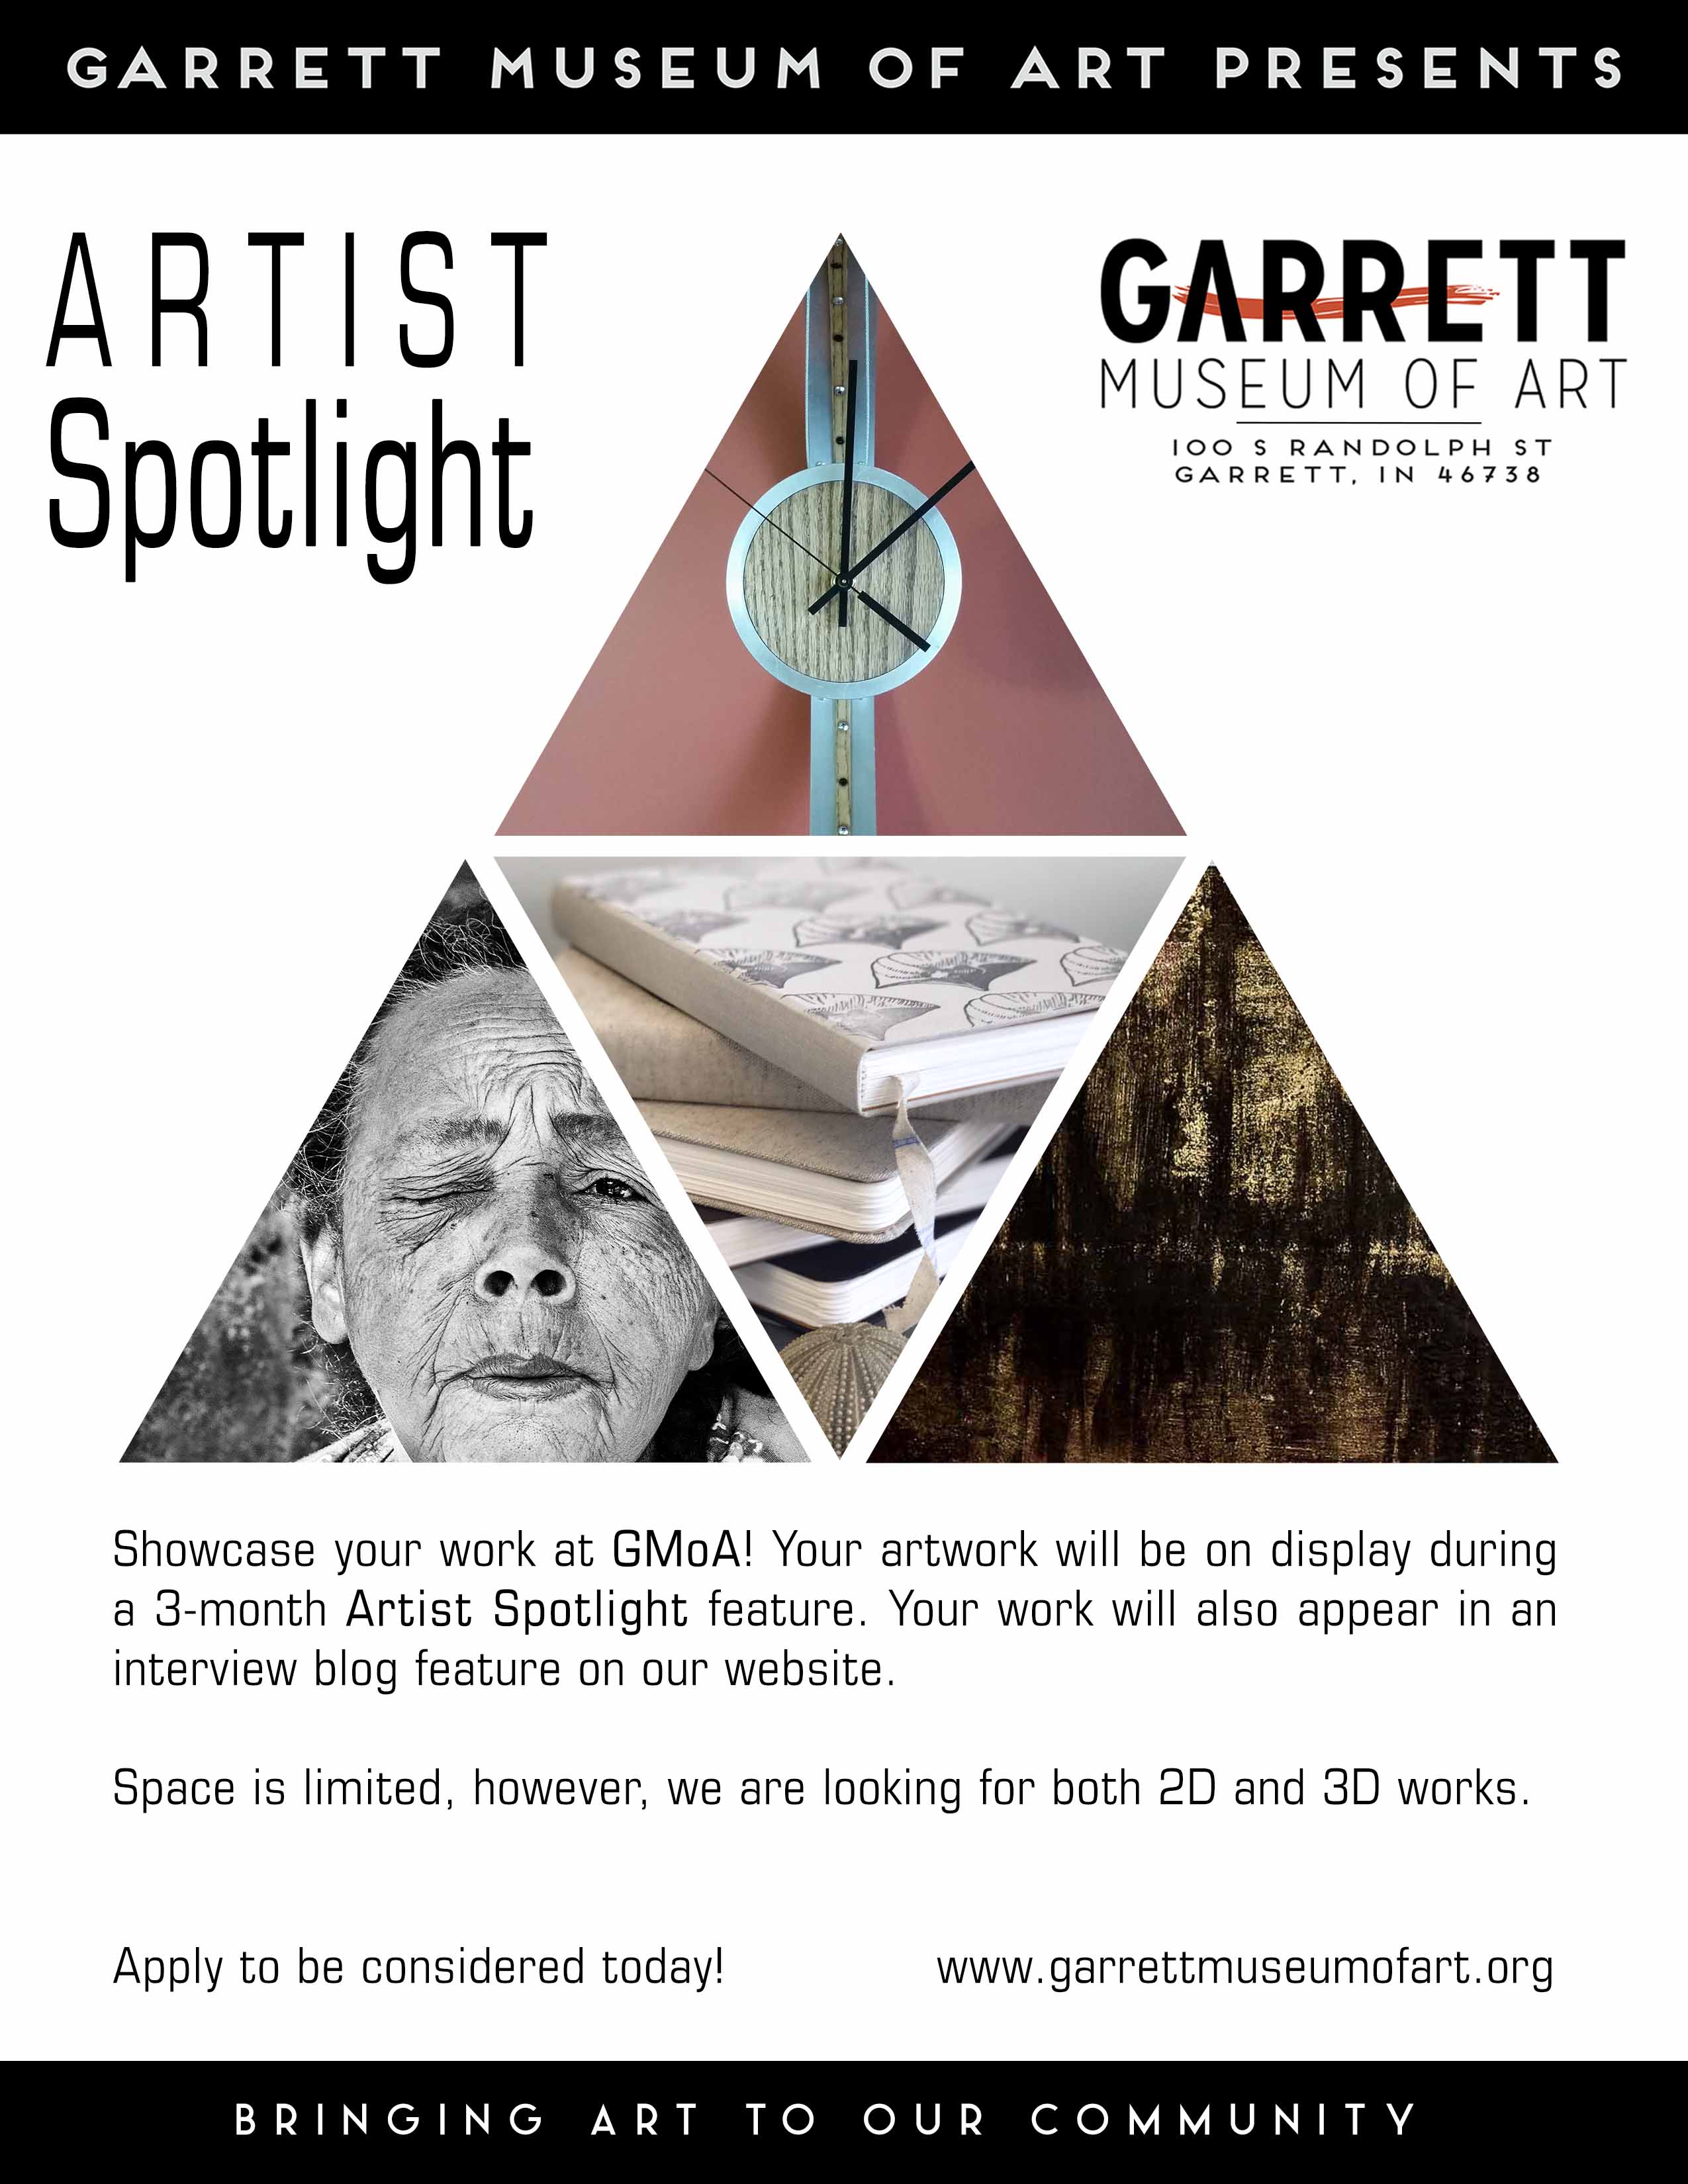 Artist Spotlight at The Garrett Museum of Art in Garrett, Indiana